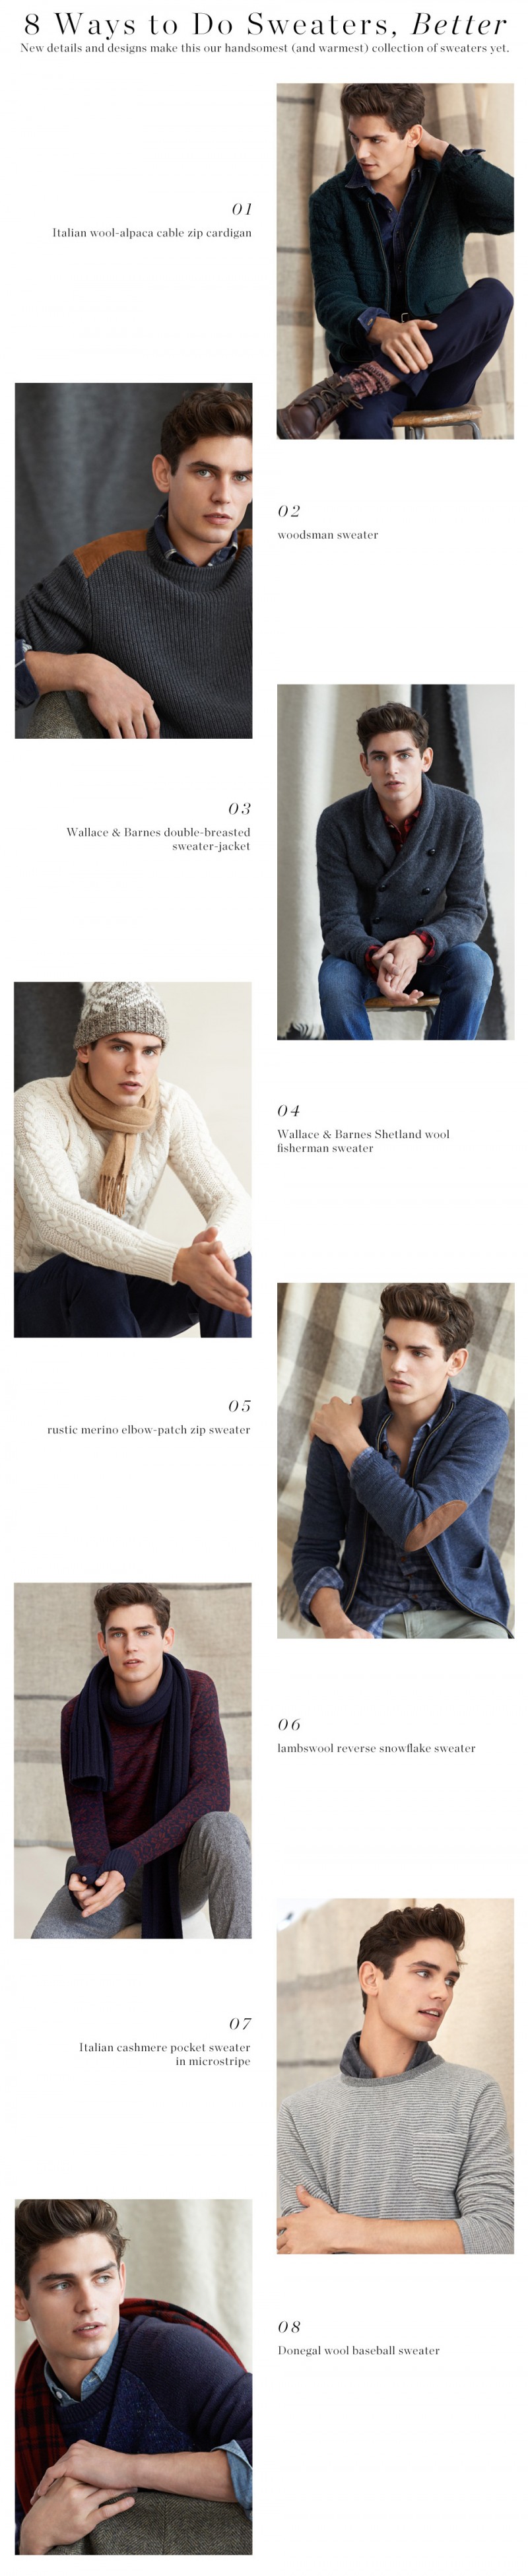 JCrew-Mens-Fall-Winter-2014-Sweaters